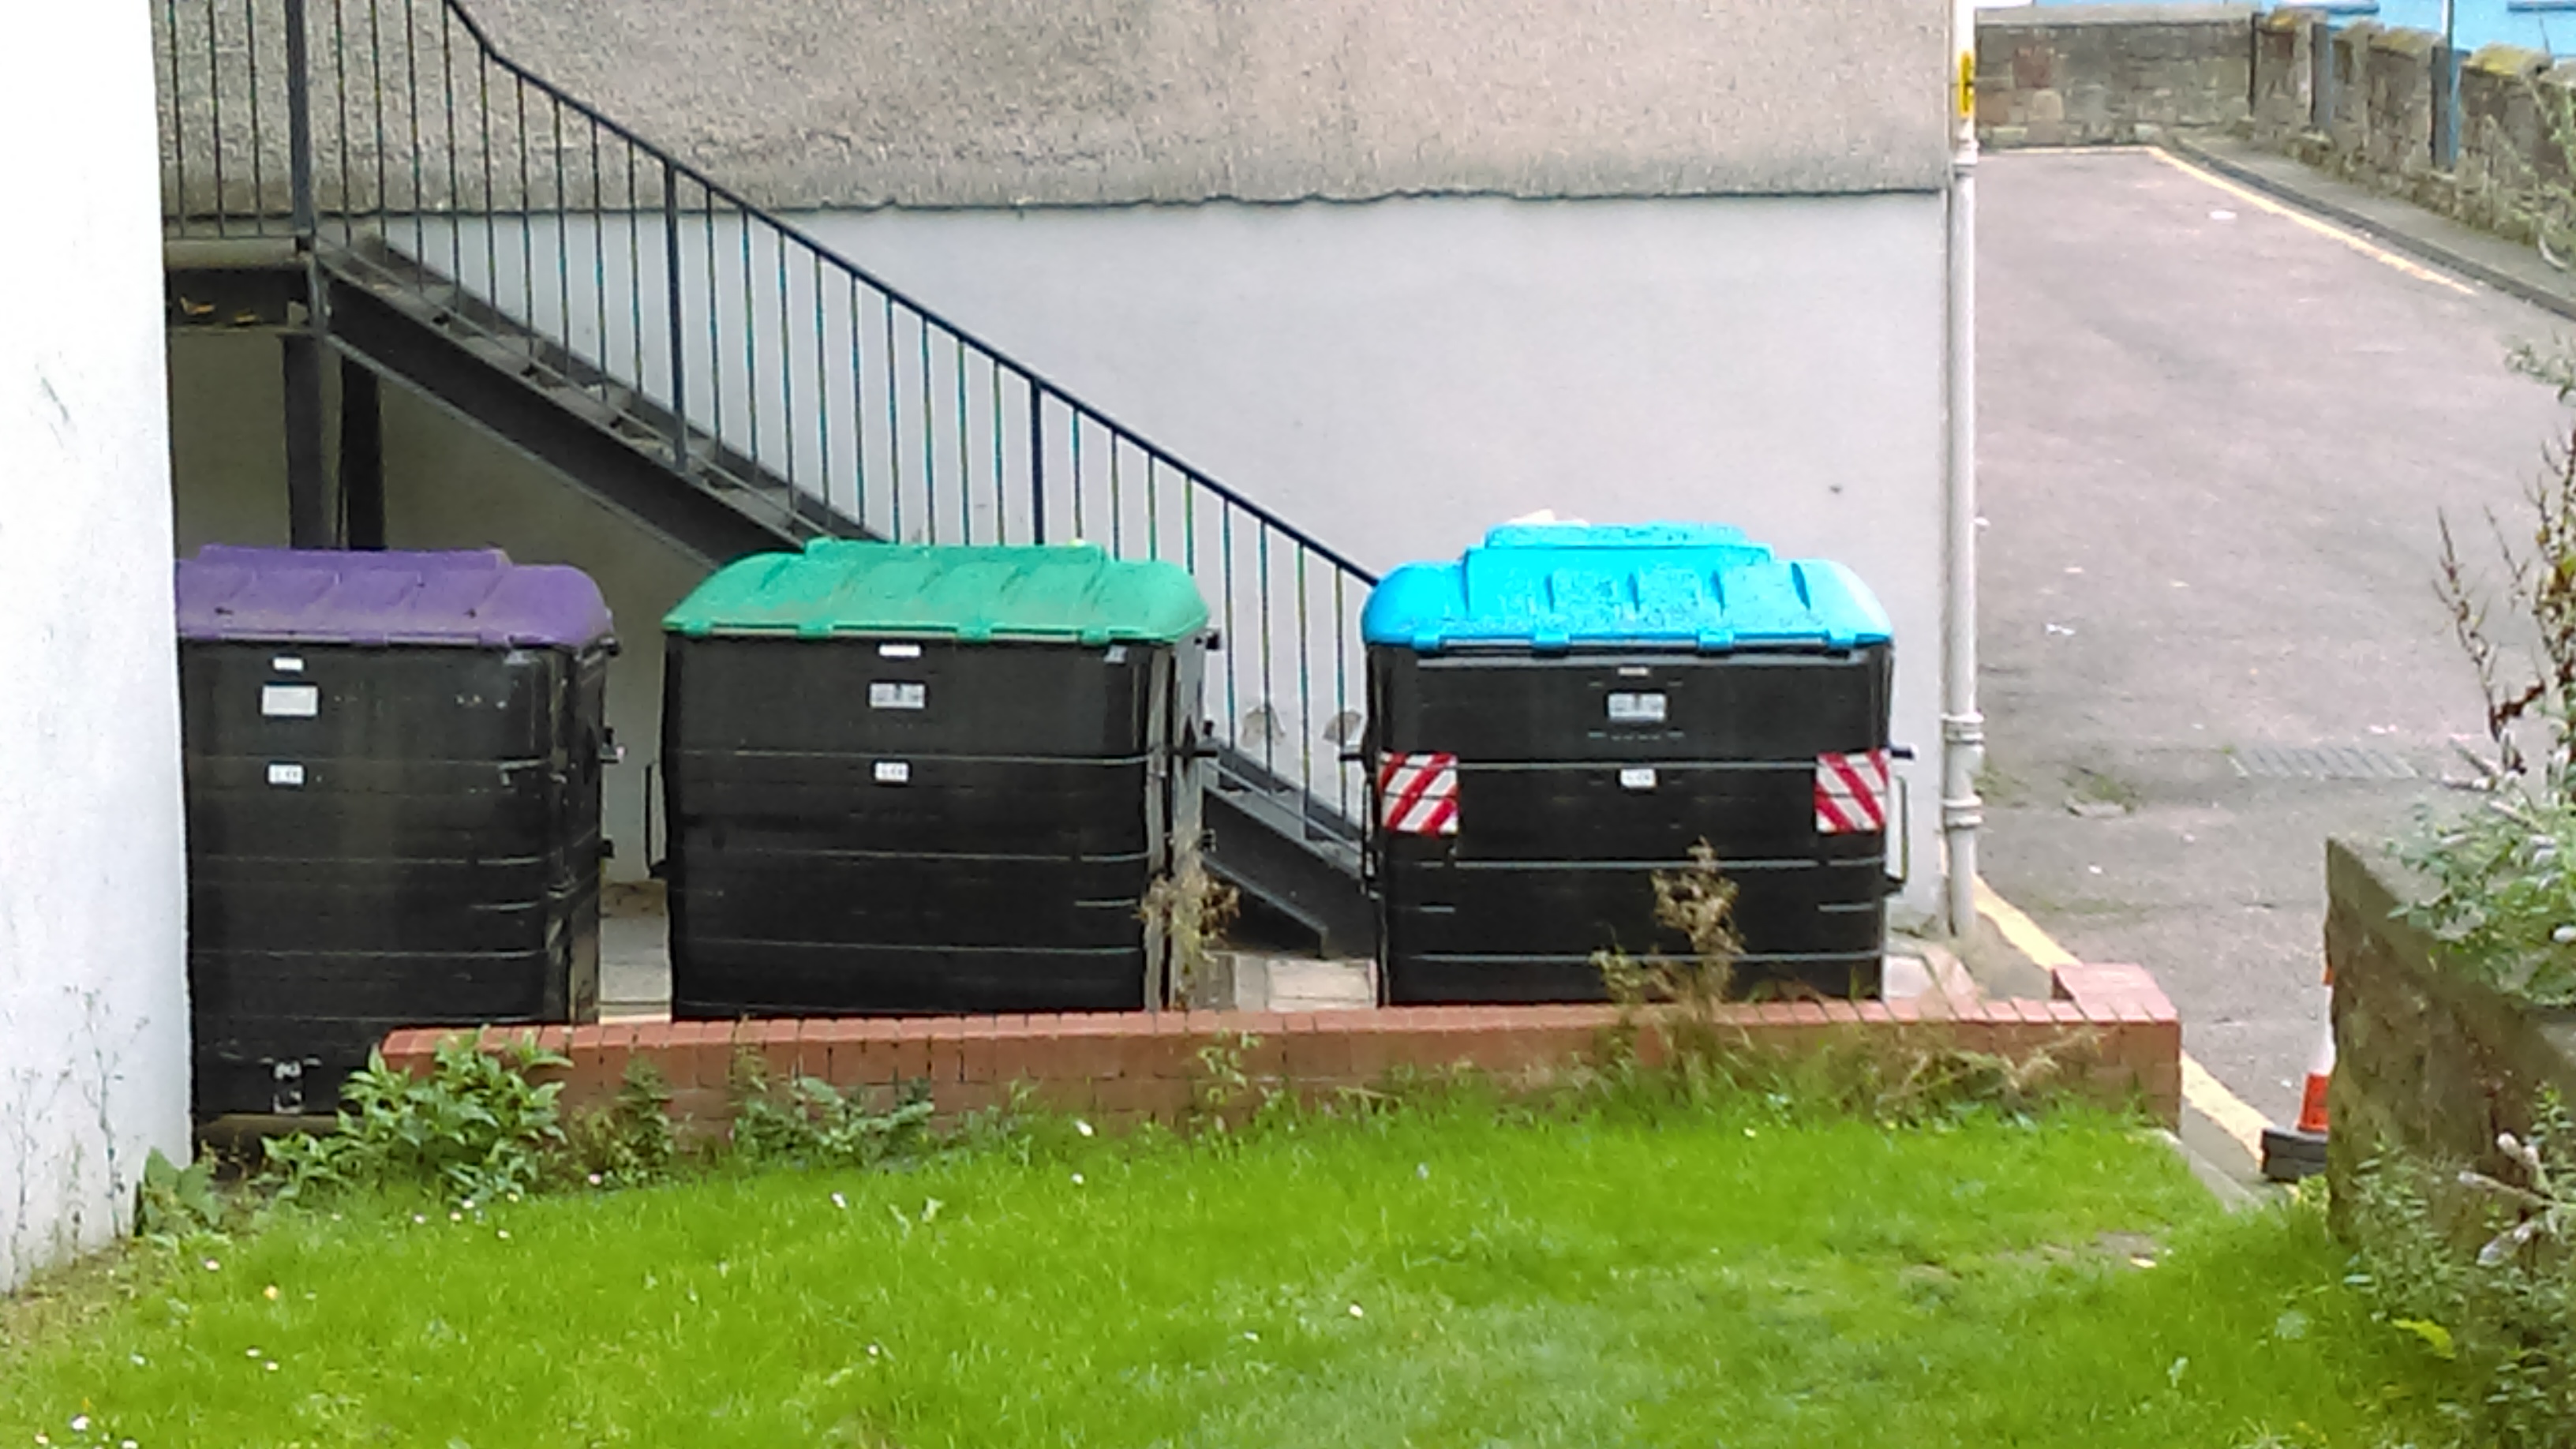 Tres contenidors de reciclatge, un lila per al vidre, un verd per reciclatge mixt i un de blau per al paper i cartró